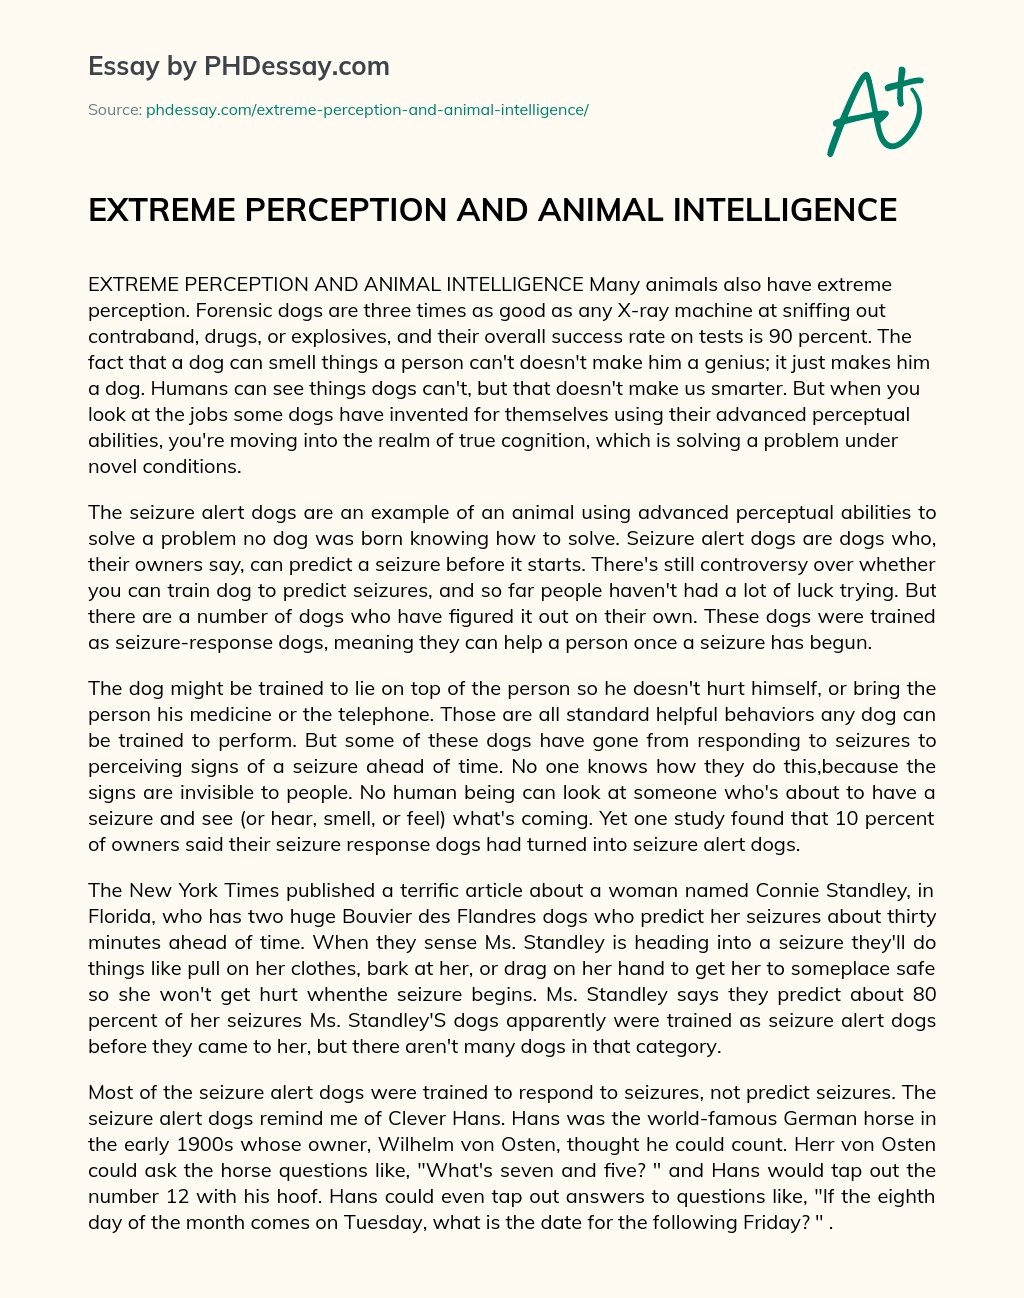 EXTREME PERCEPTION AND ANIMAL INTELLIGENCE essay